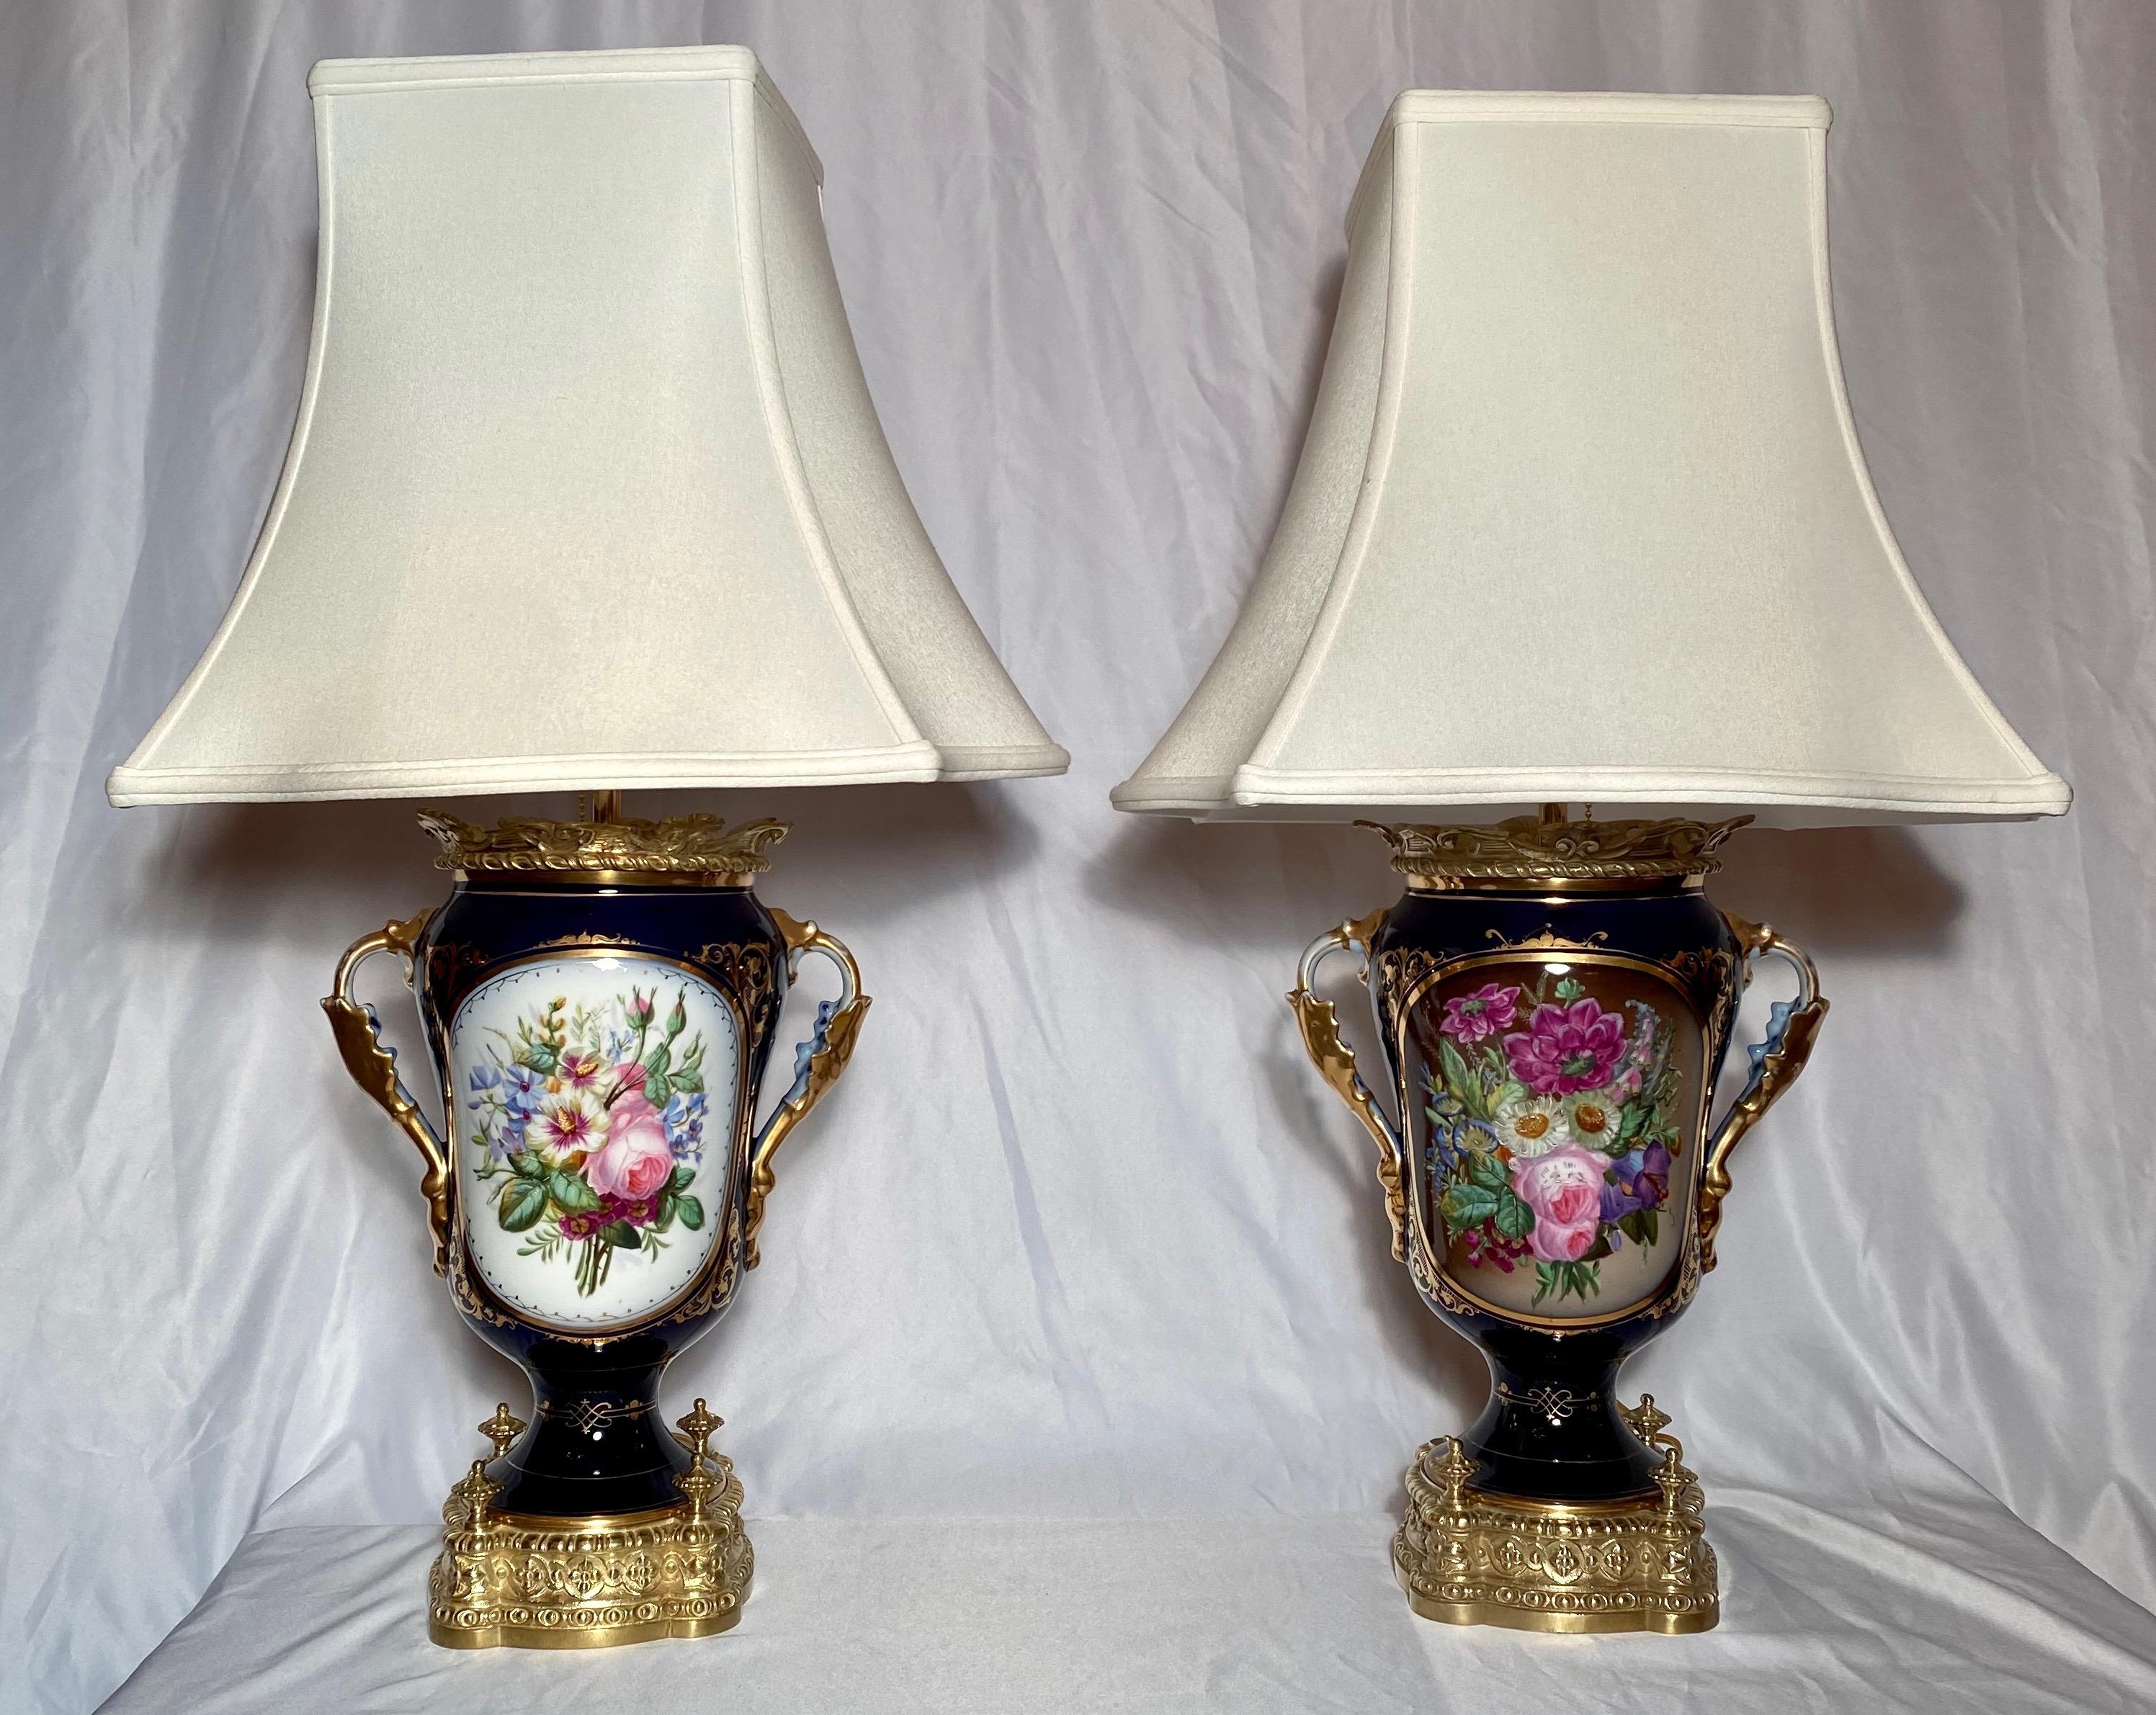 Paire de lampes anciennes en porcelaine du Vieux Paris, vers 1880.

     